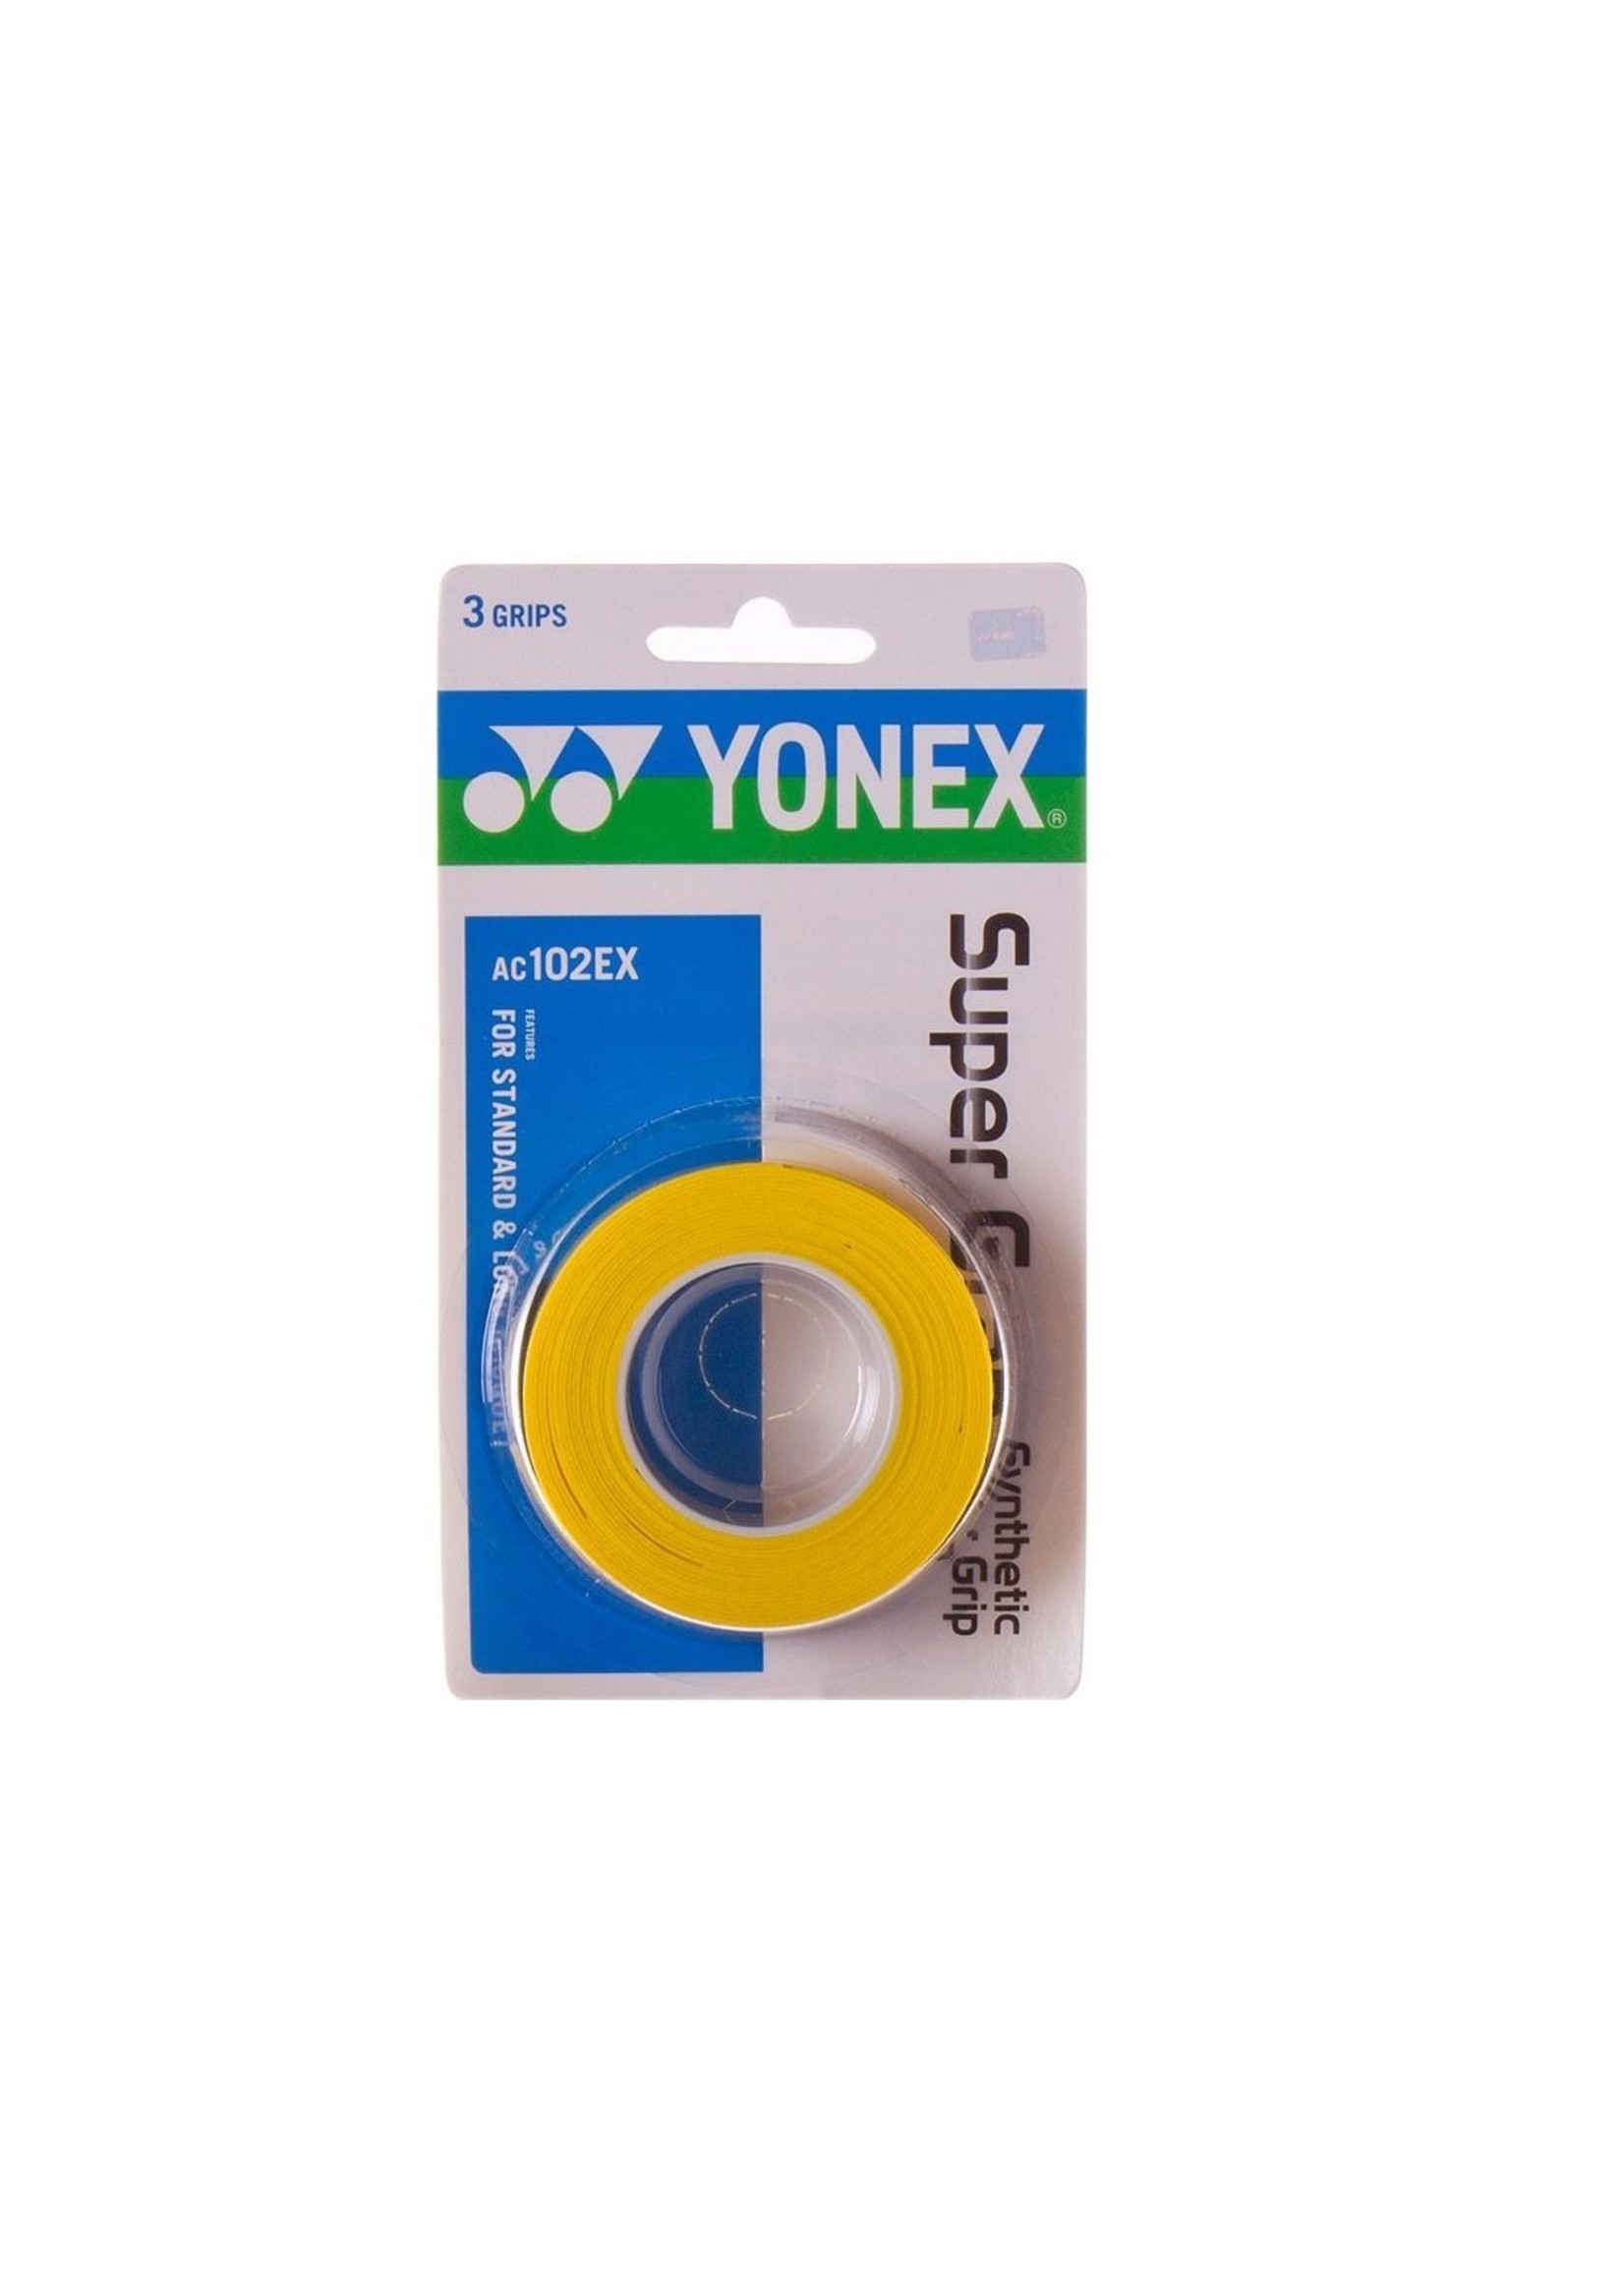 Yonex Yonex Super Grap AC102EX 3PCS